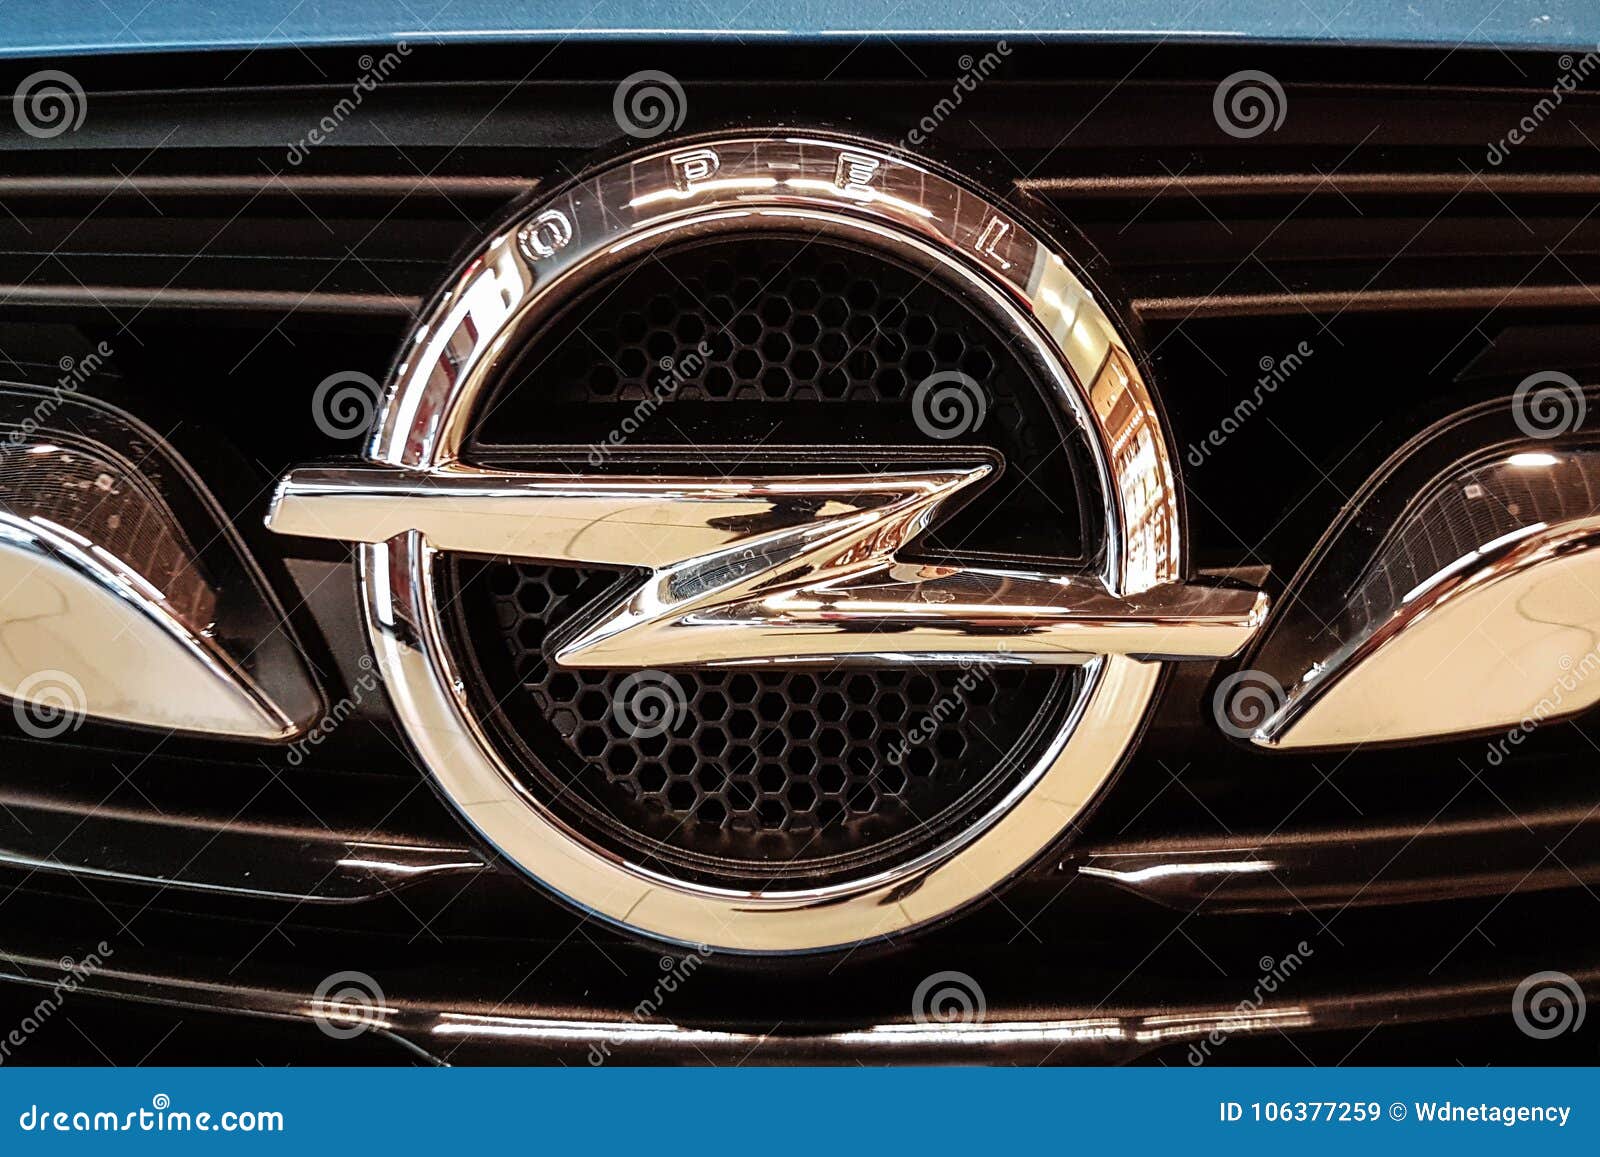 New Opel Metallic Emblem Closeup Editorial Stock Image - Image of